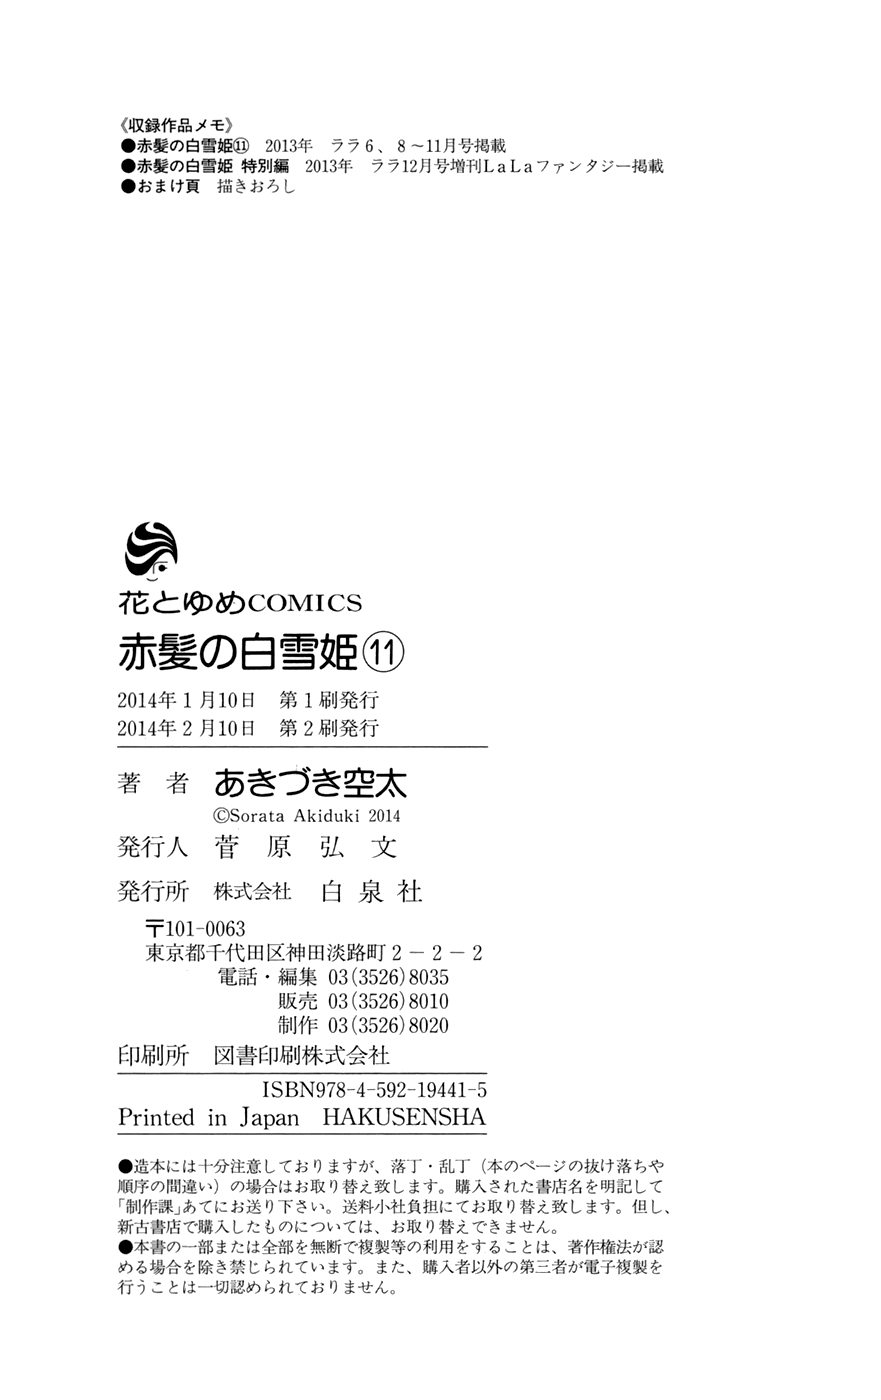 Akagami no Shirayukihime Vol.11 Ch.49.2